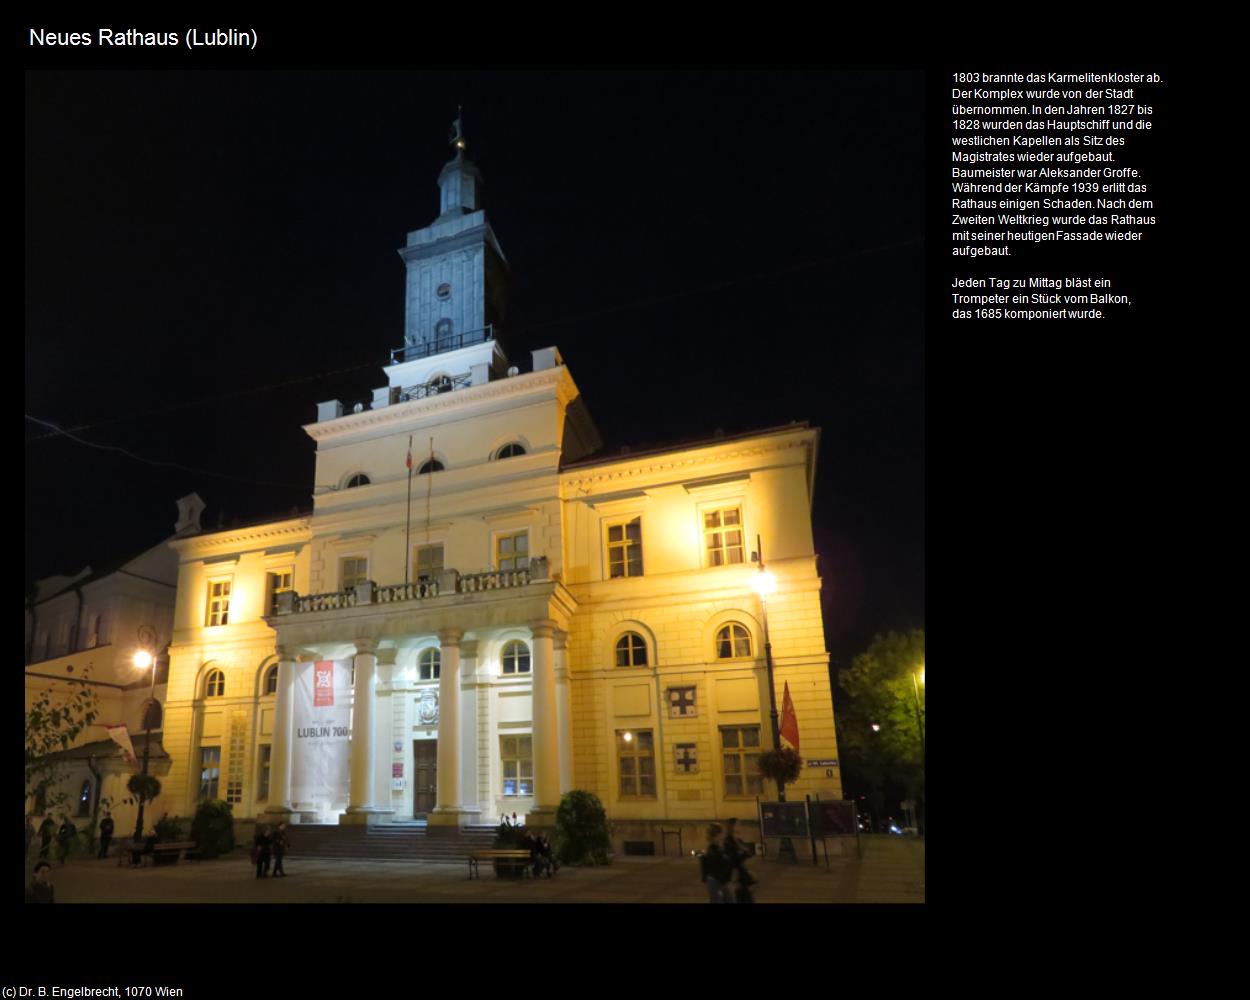 Neues Rathaus (Lublin) in POLEN-Galizien